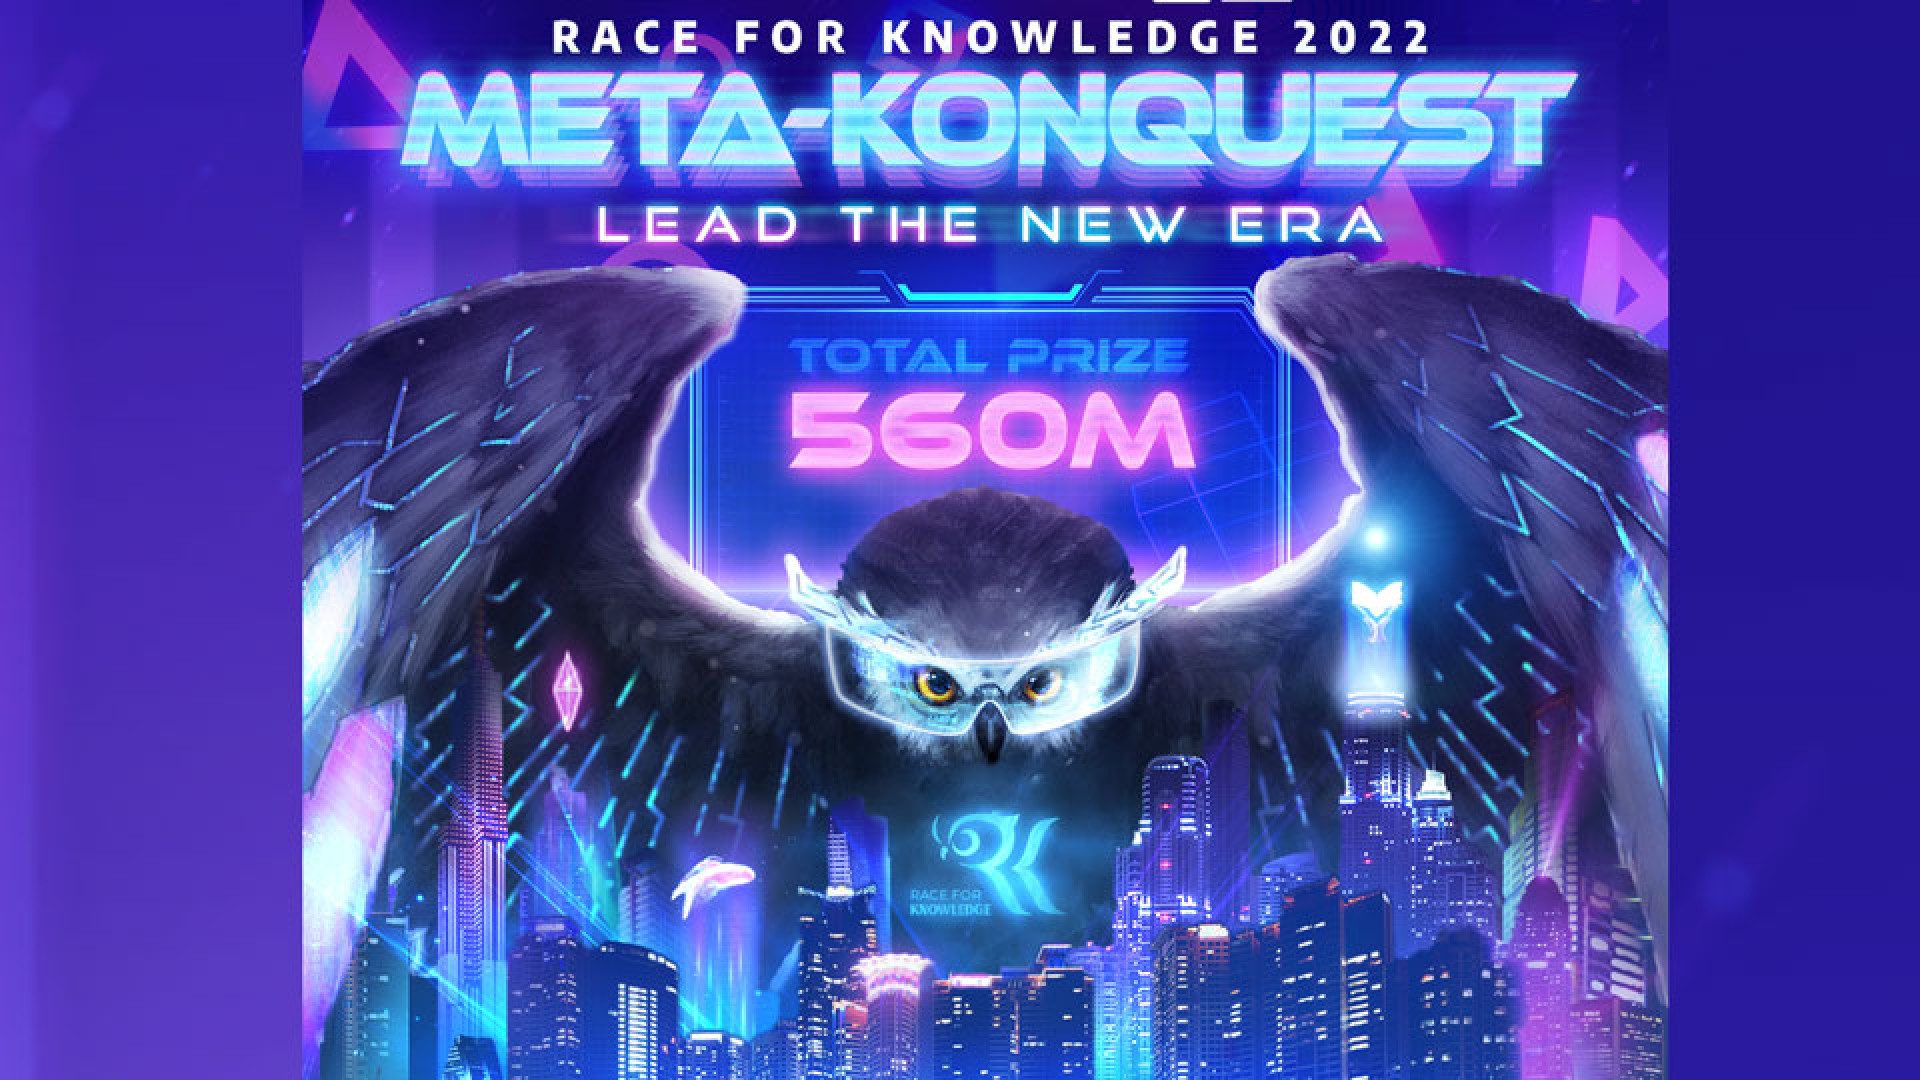 Chính thức phát động cuộc thi Race for Knowledge 2022: META-KONQUEST